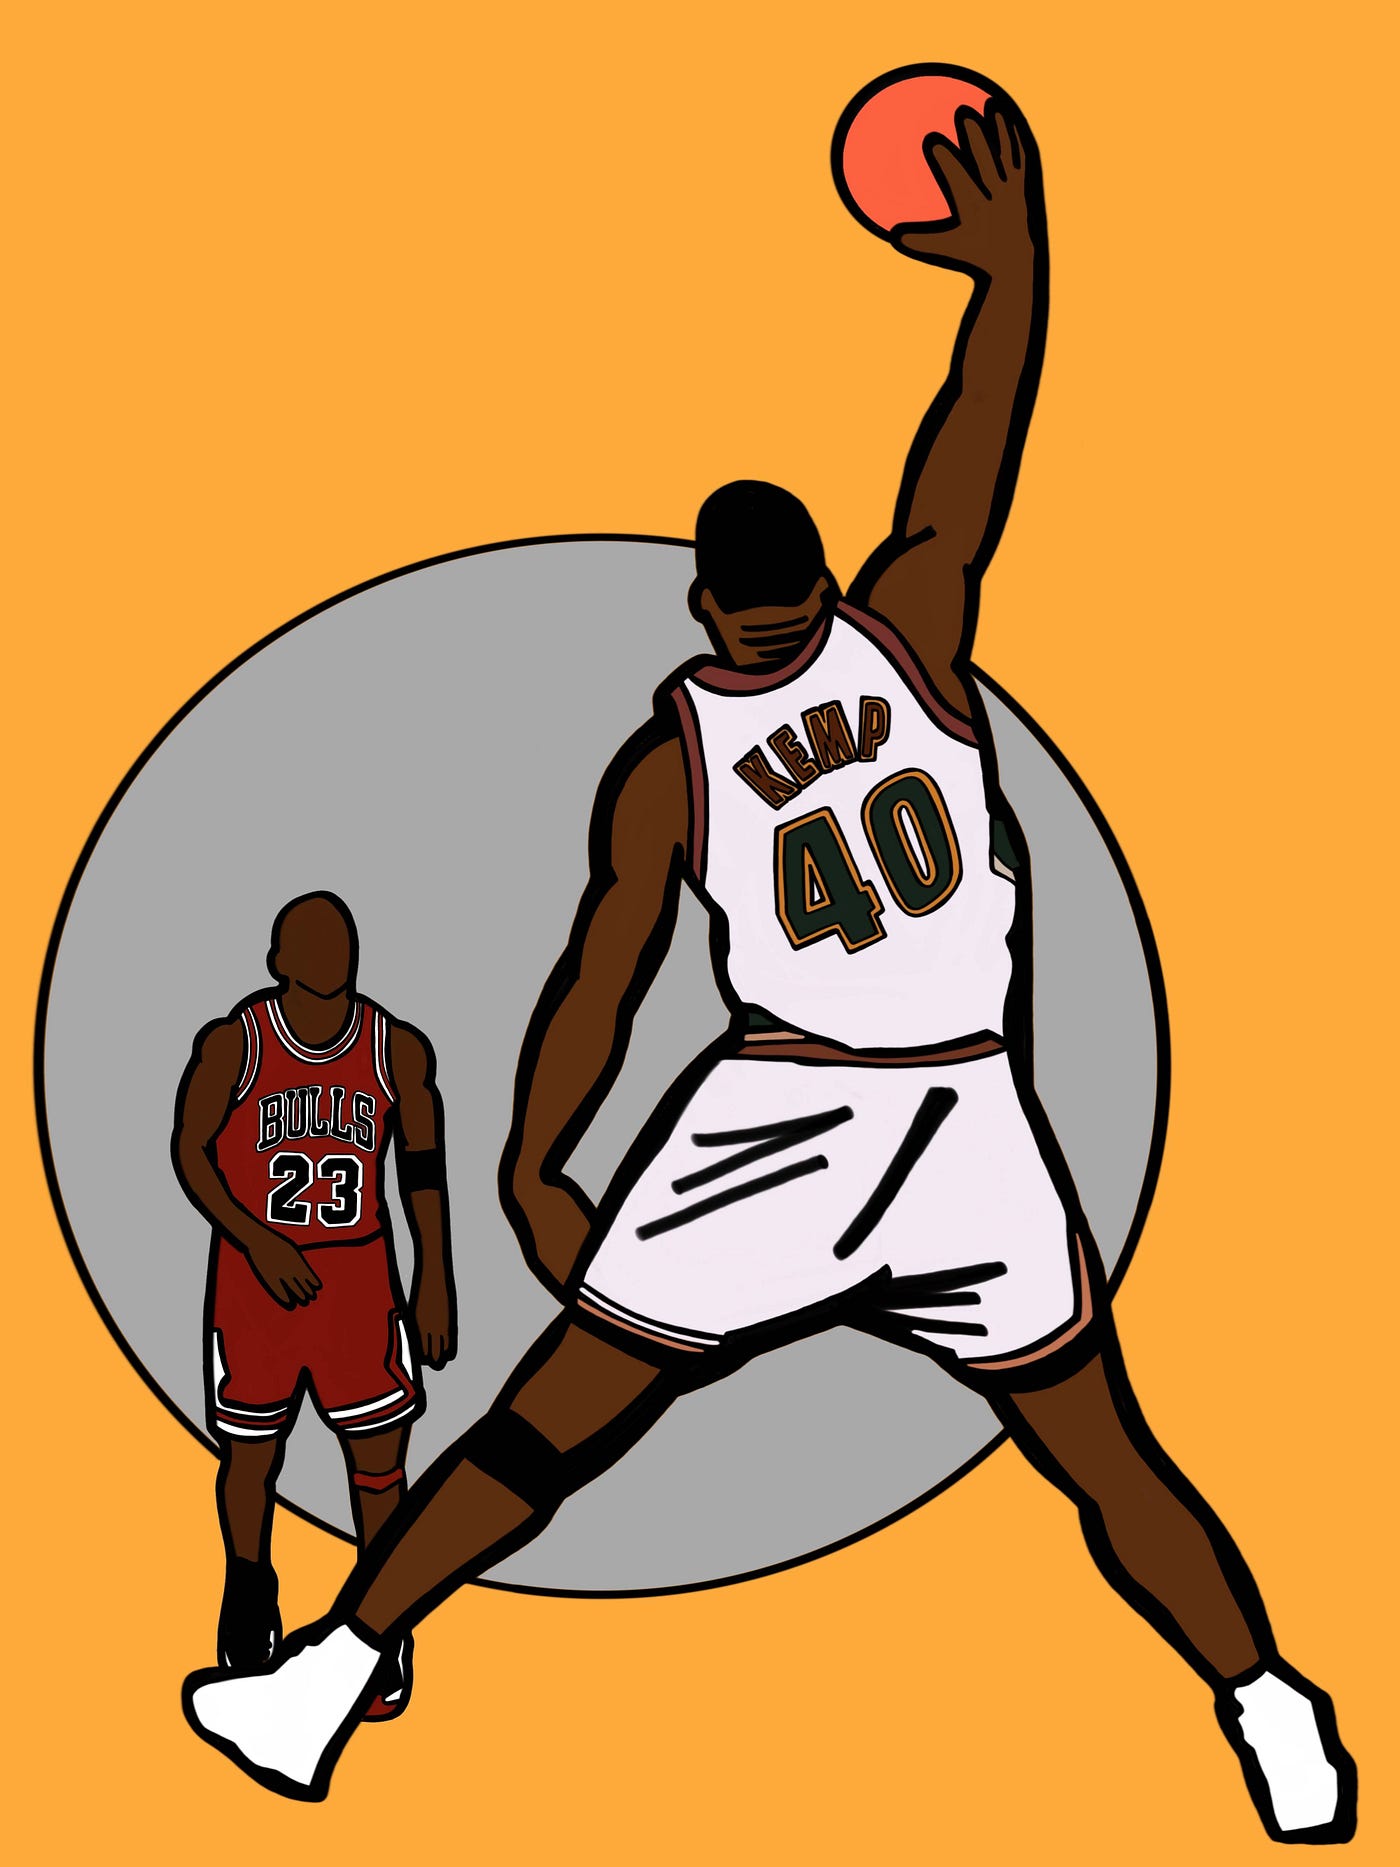 Shawn Kemp: A '90s Basketball Mythology, by Alan Chazaro